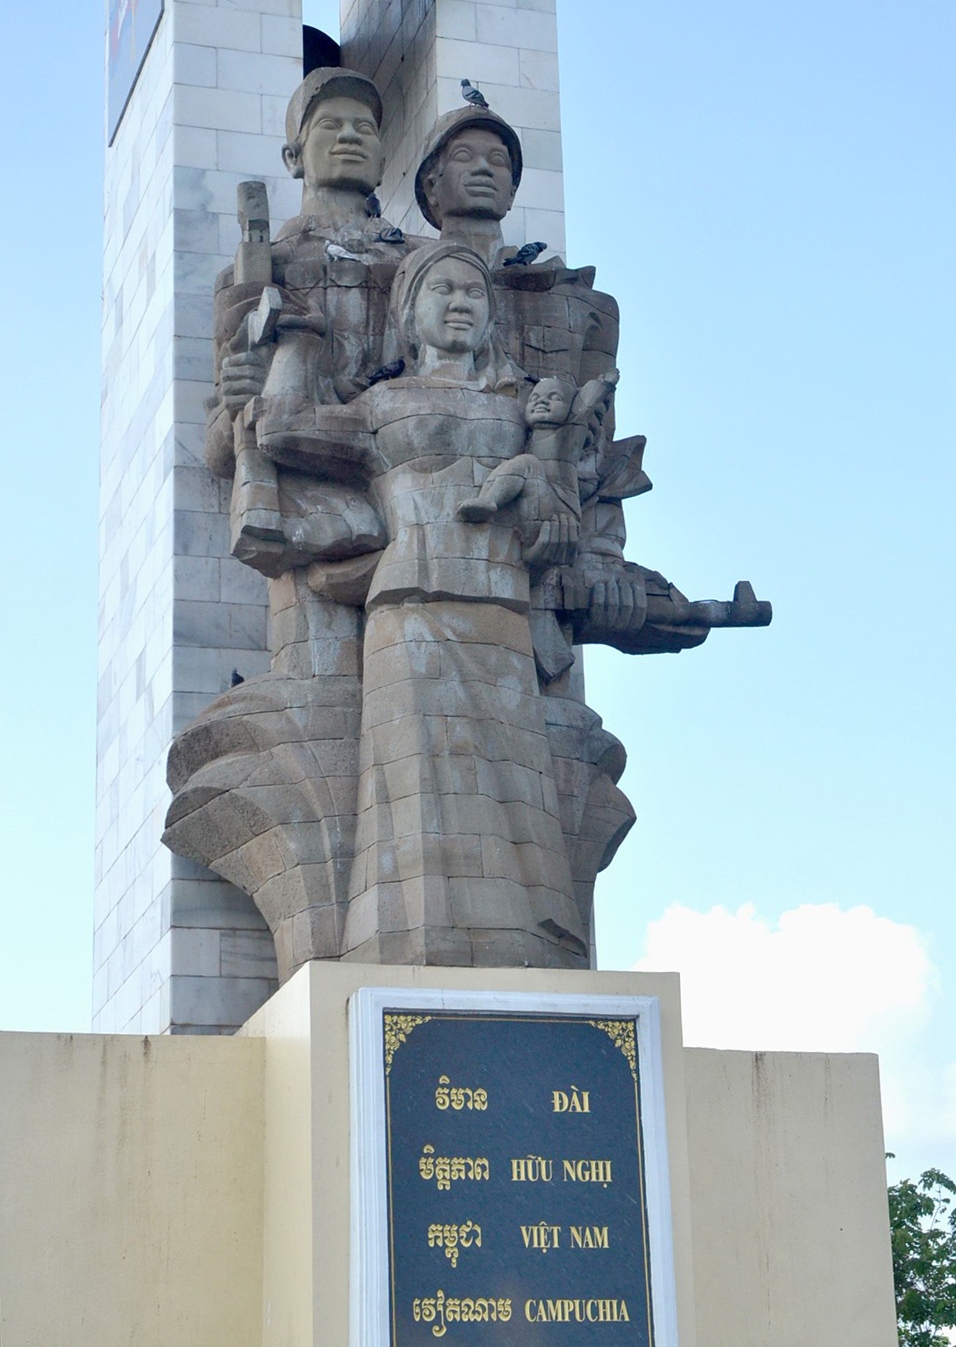 Tượng đài tại Thủ đô Phnom Penh cao 1m, với trọng tâm là khối tạc hình một người lính của Campuchia và một người lính của Việt Nam đang đứng bảo vệ một thiếu phụ bế trên tay đứa con nhỏ.